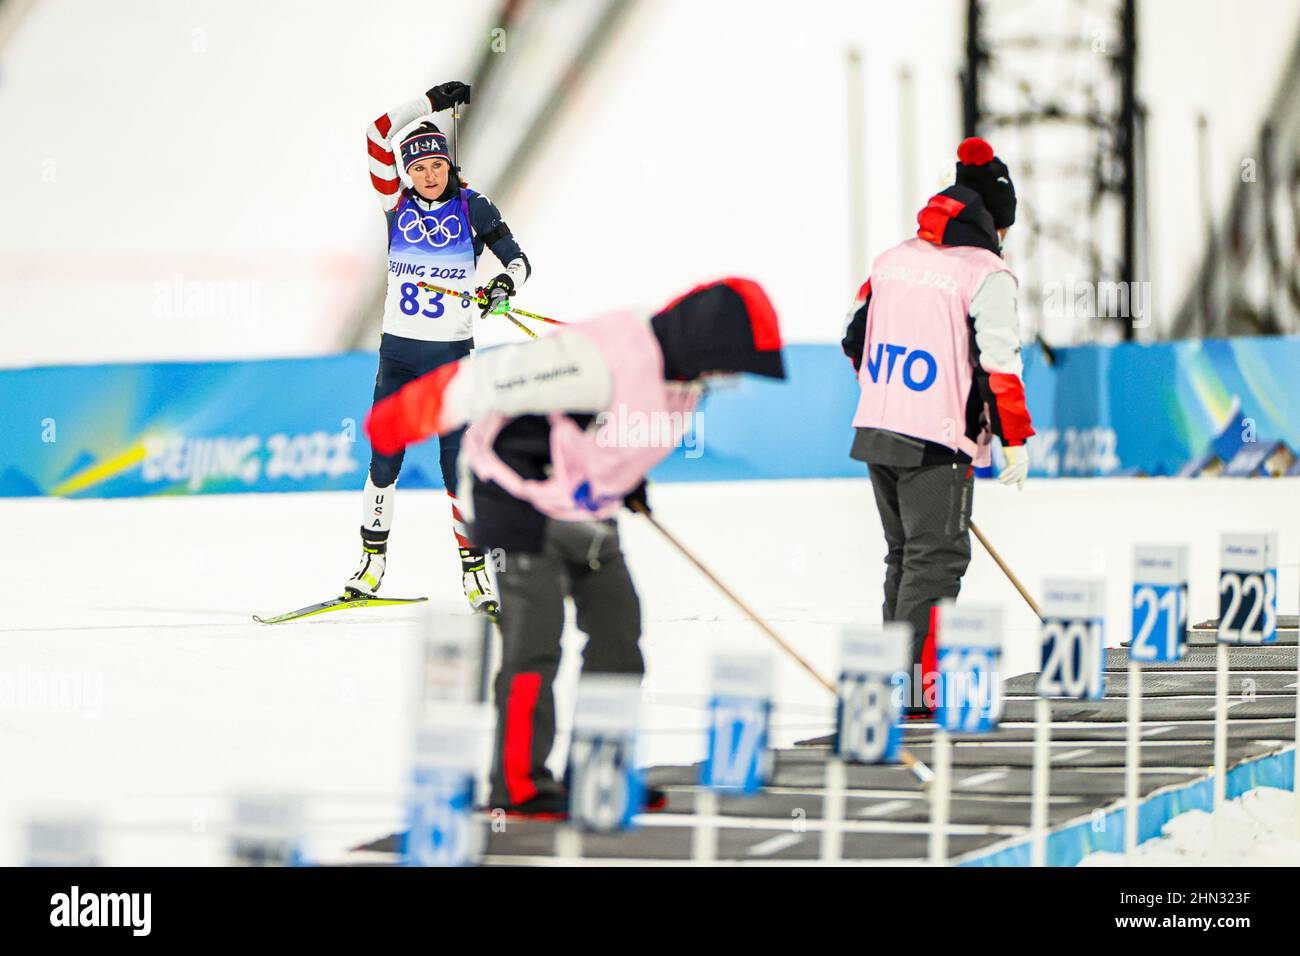 Joanne Reid (USA), 7 FEBBRAIO 2022 - Biathlon : l'individuo delle 15km donne durante i Giochi Olimpici invernali di Pechino 2022 al National Biathlon Centre i Foto Stock